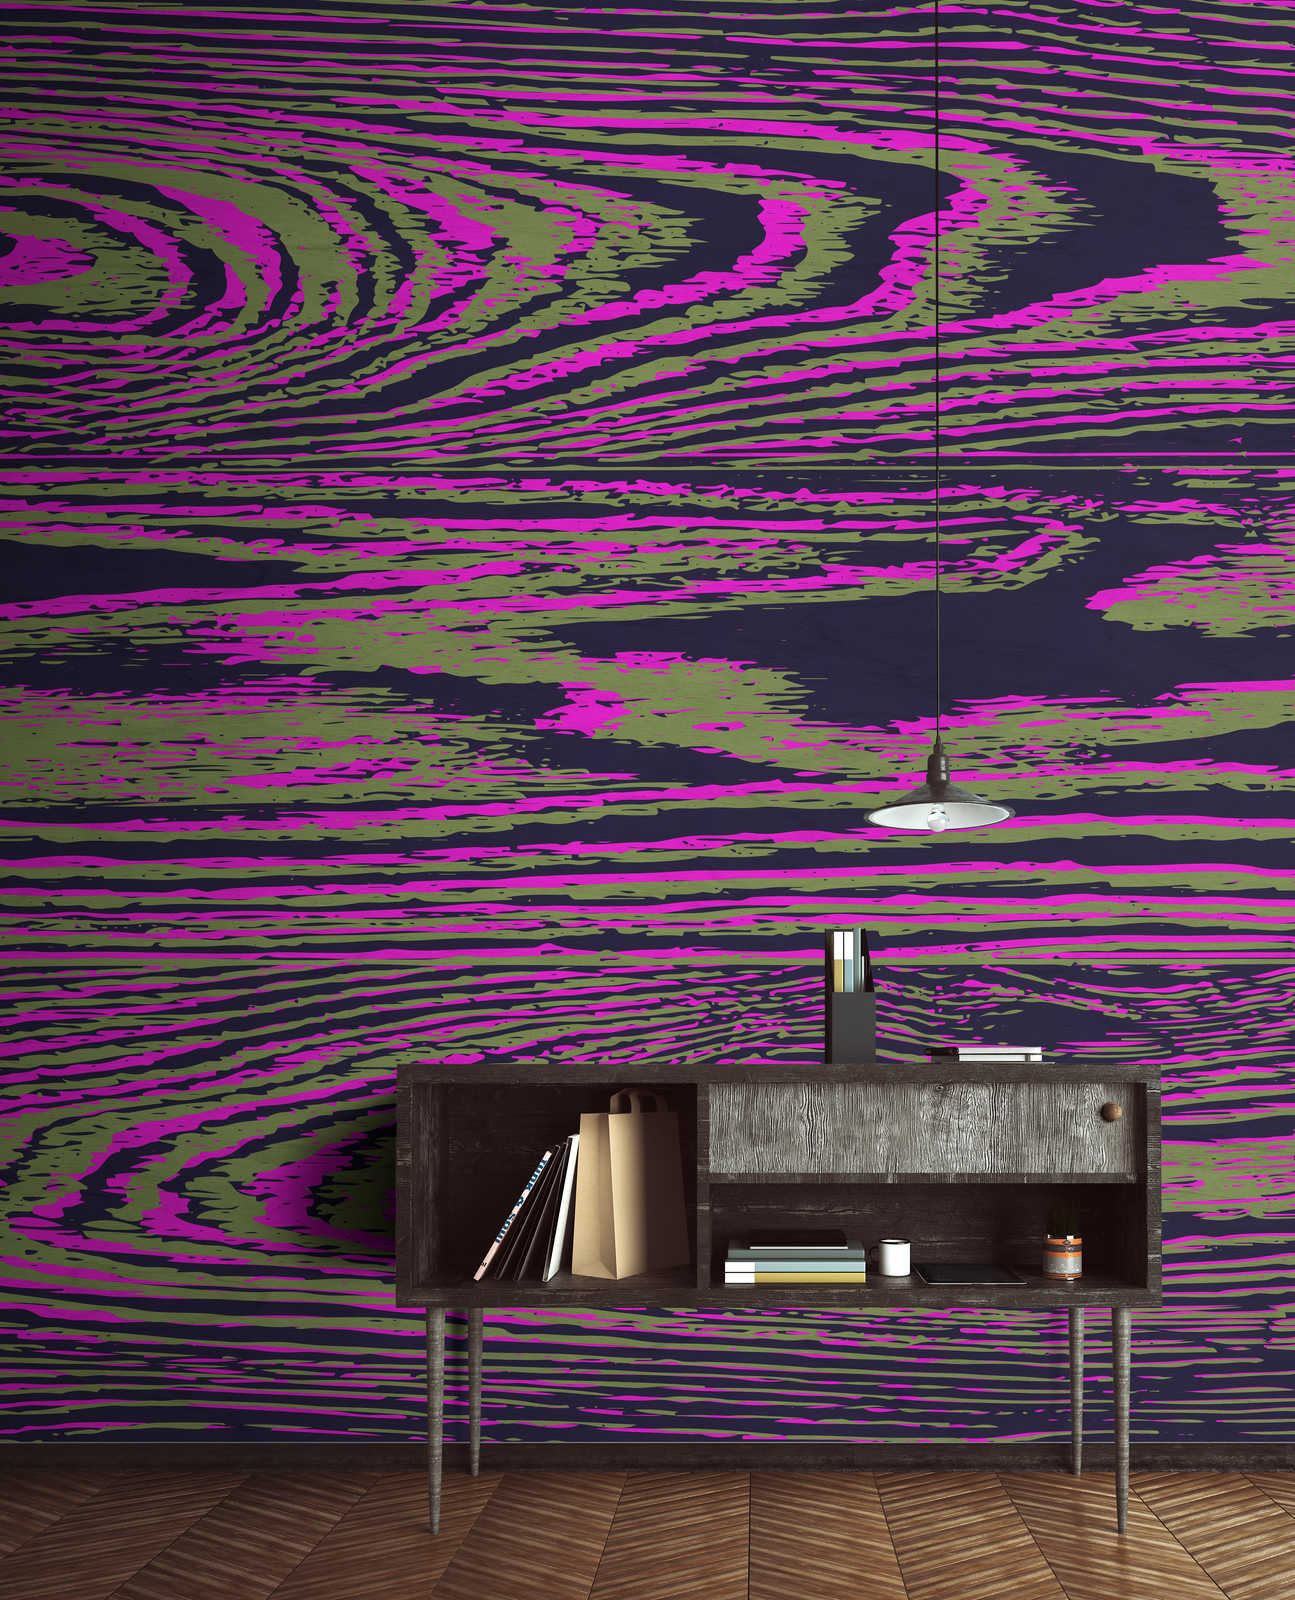             Kontiki 2 - Papier peint panoramique veines de bois néon, rose & noir
        